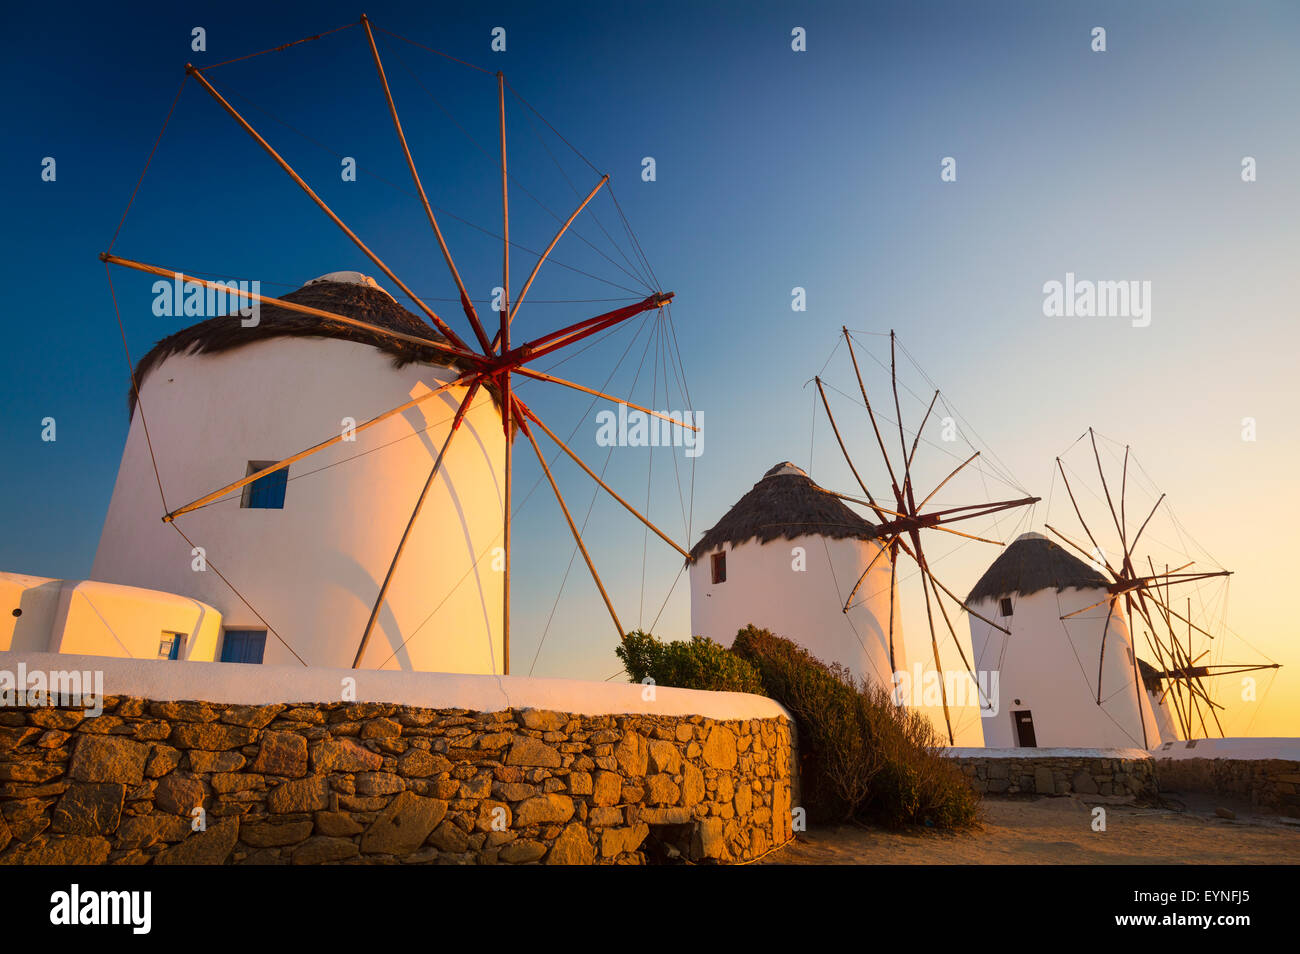 Moulins de Mykonos - Les moulins à vent sont un trait caractéristique des paysages de Mykonos. Banque D'Images